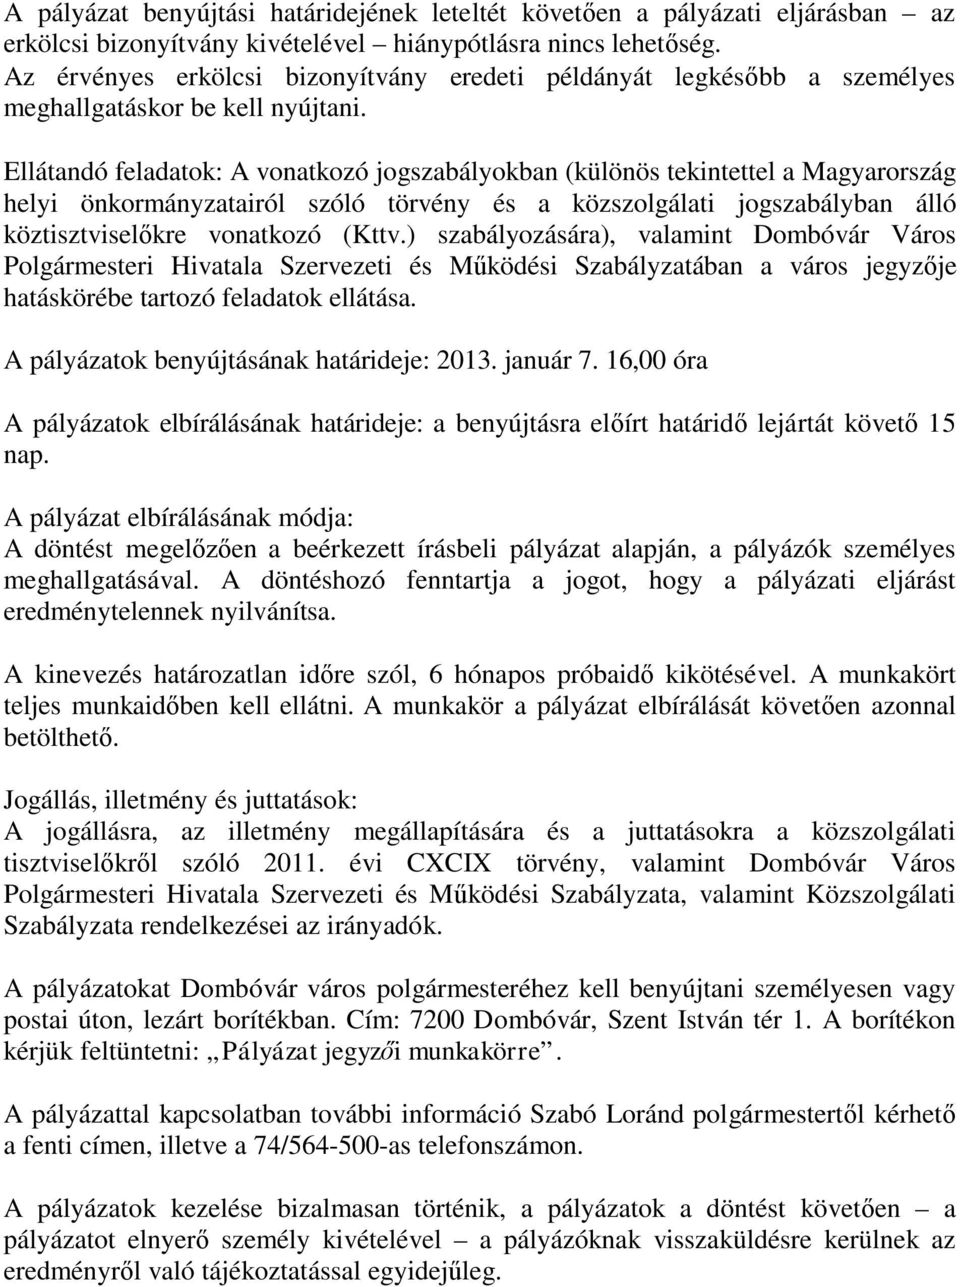 Ellátandó feladatok: A vonatkozó jogszabályokban (különös tekintettel a Magyarország helyi önkormányzatairól szóló törvény és a közszolgálati jogszabályban álló köztisztviselőkre vonatkozó (Kttv.